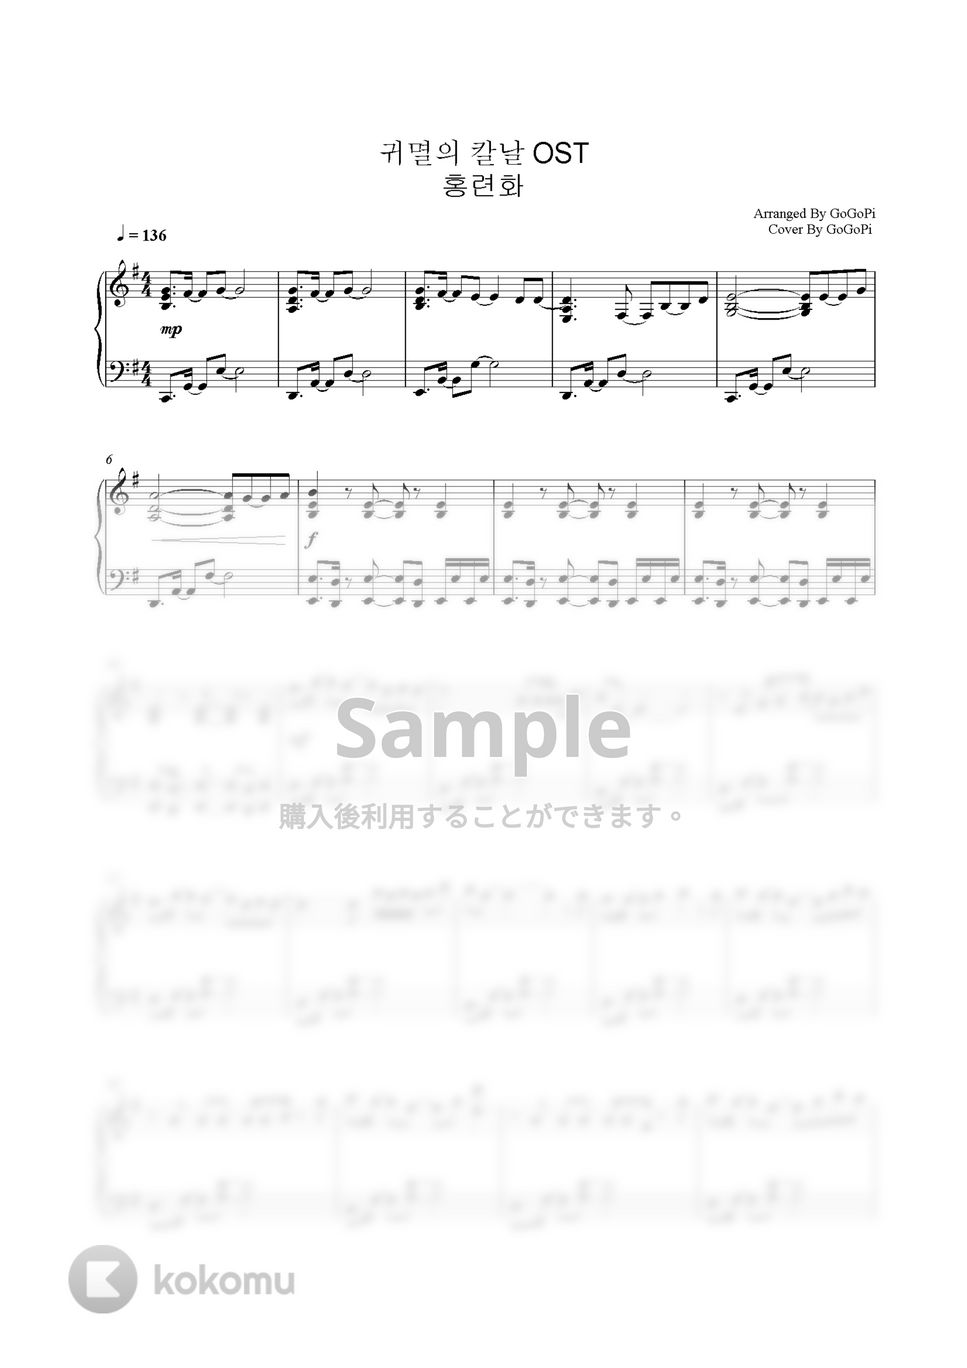 鬼滅の刃 - 紅蓮華 (Piano Ver.) by GoGoPiano